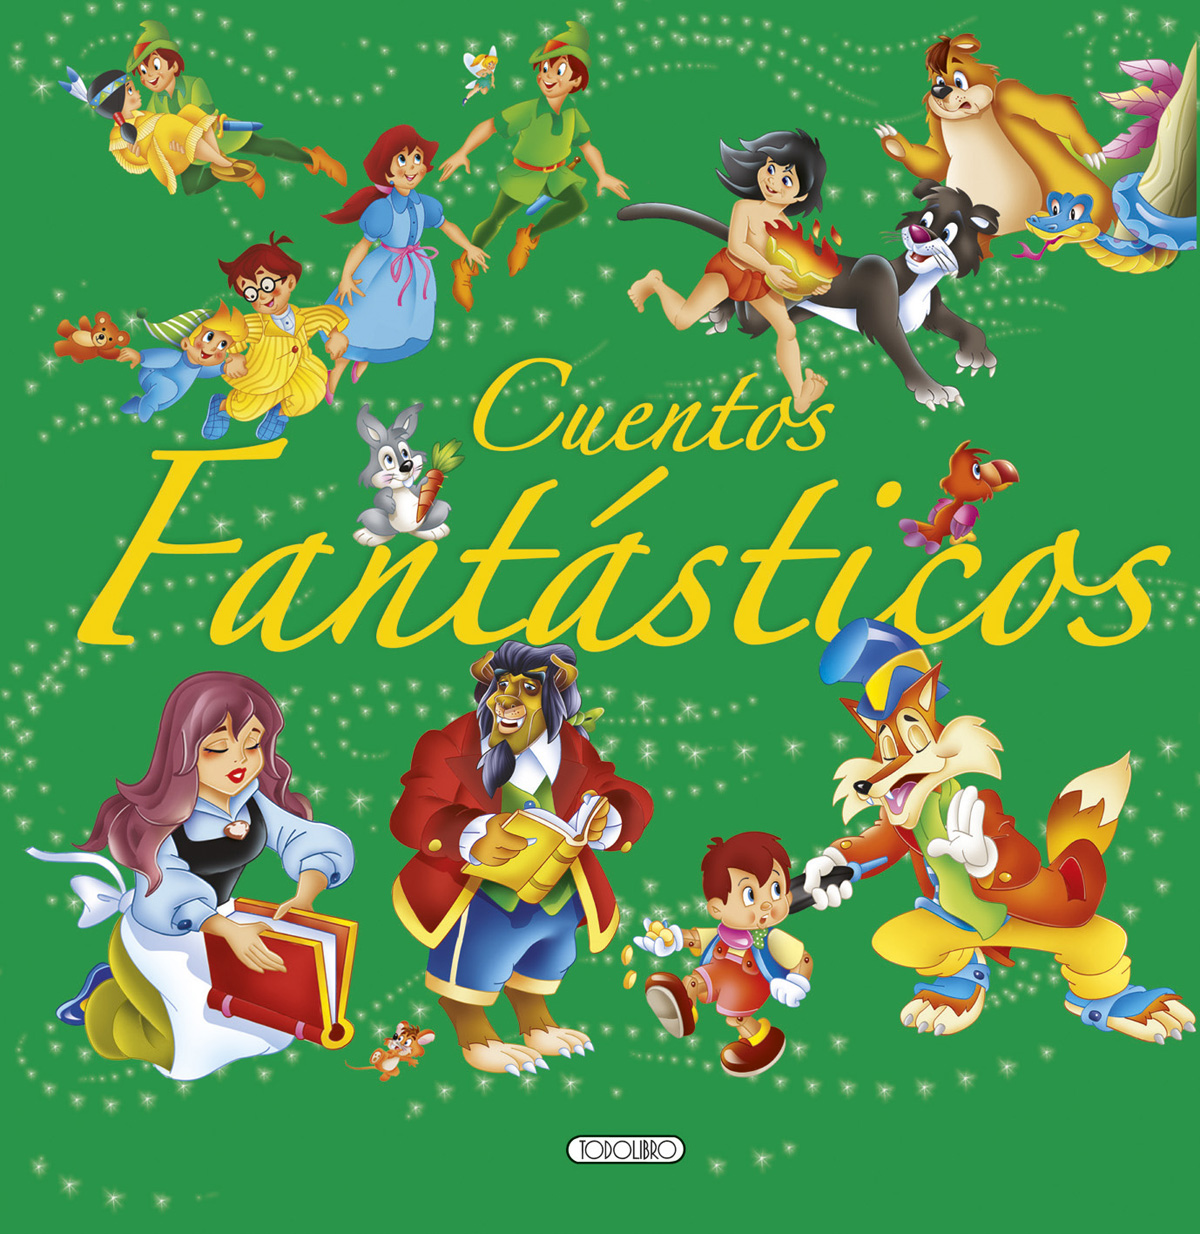 Libro de Cuentos y Fábulas - Todolibro-Castellano - - Todo libro - Libros  infantiles en castellano y catalán